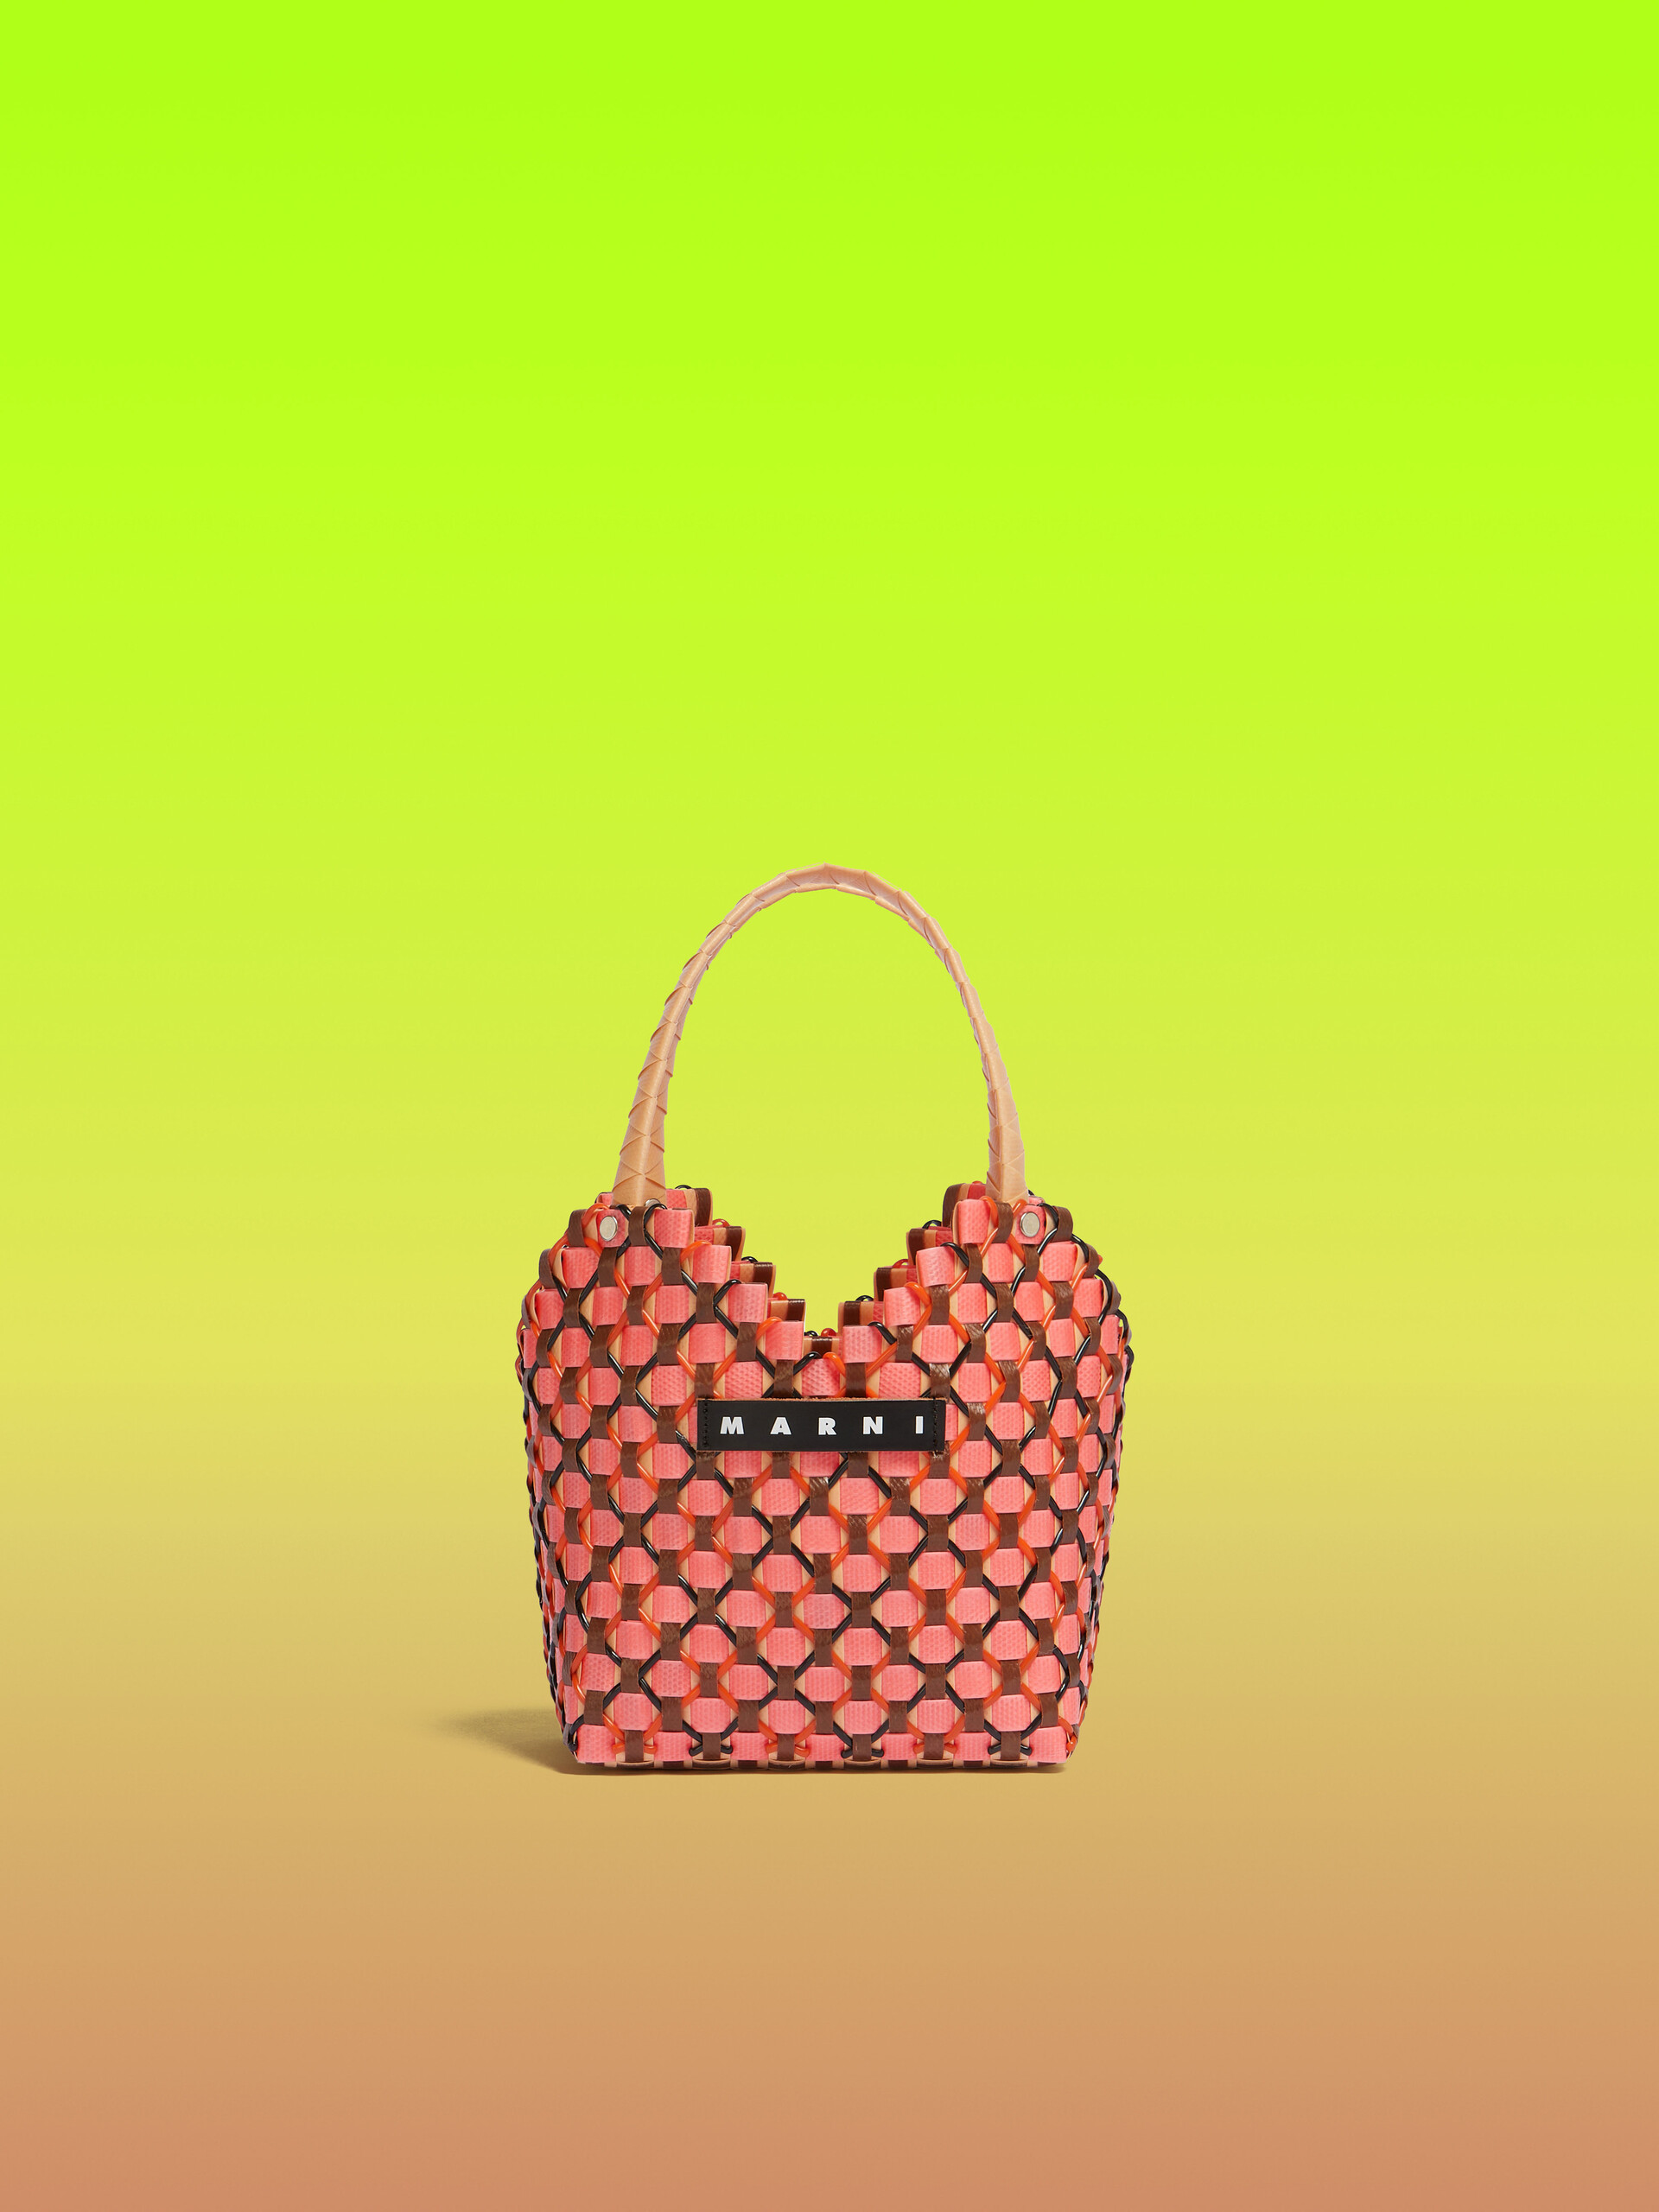 Peach Marni Market Love 2 Bag - Shopping Bags - Image 1